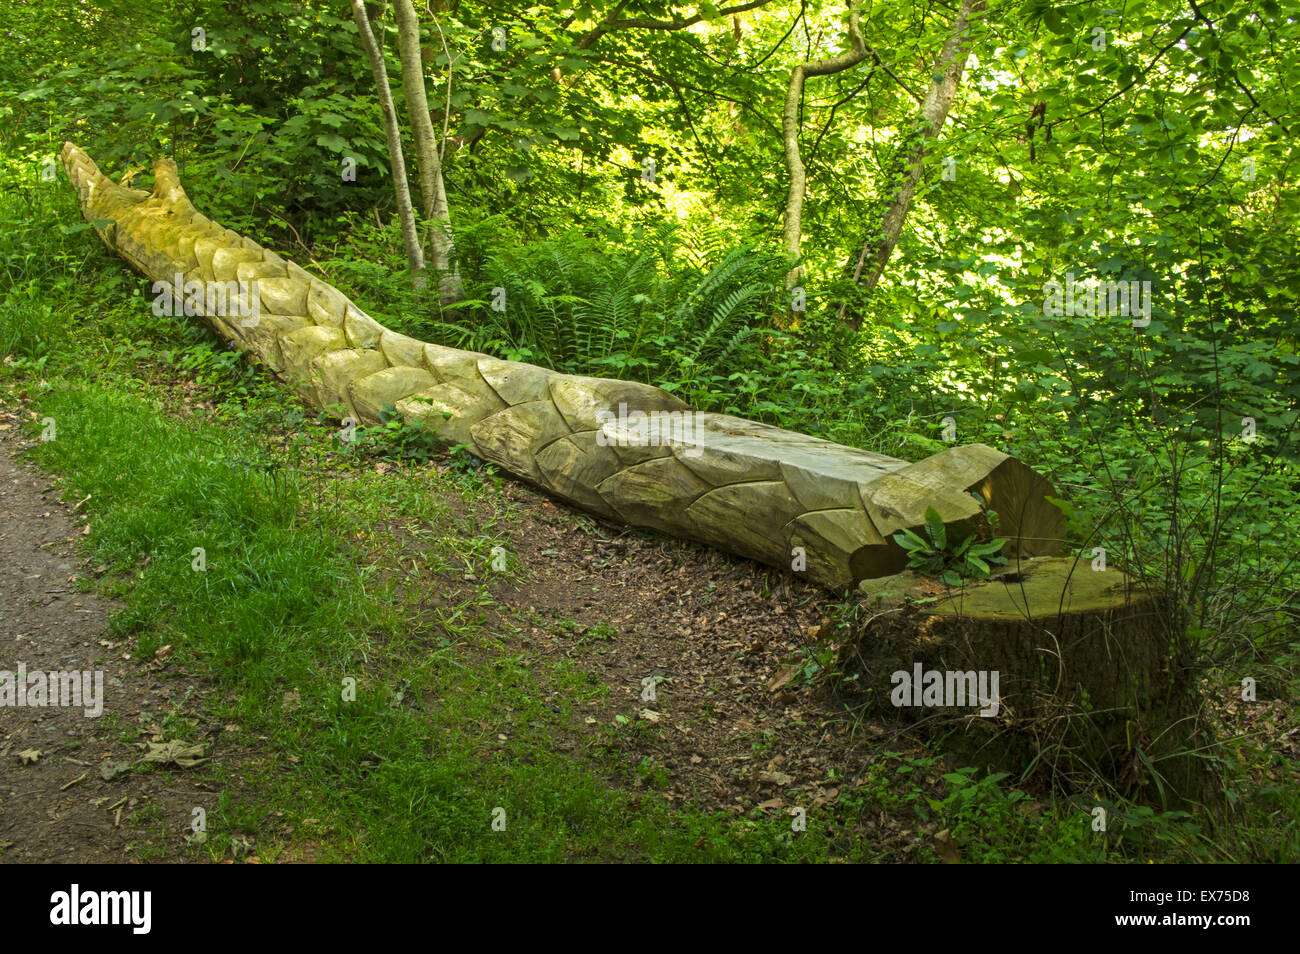 Un arbre tombé sculptés pour ressembler à un dragon avec un siège ainsi à la réserve naturelle locale, Dingle, Llangefni, Anglesey, Pays de Galles Banque D'Images